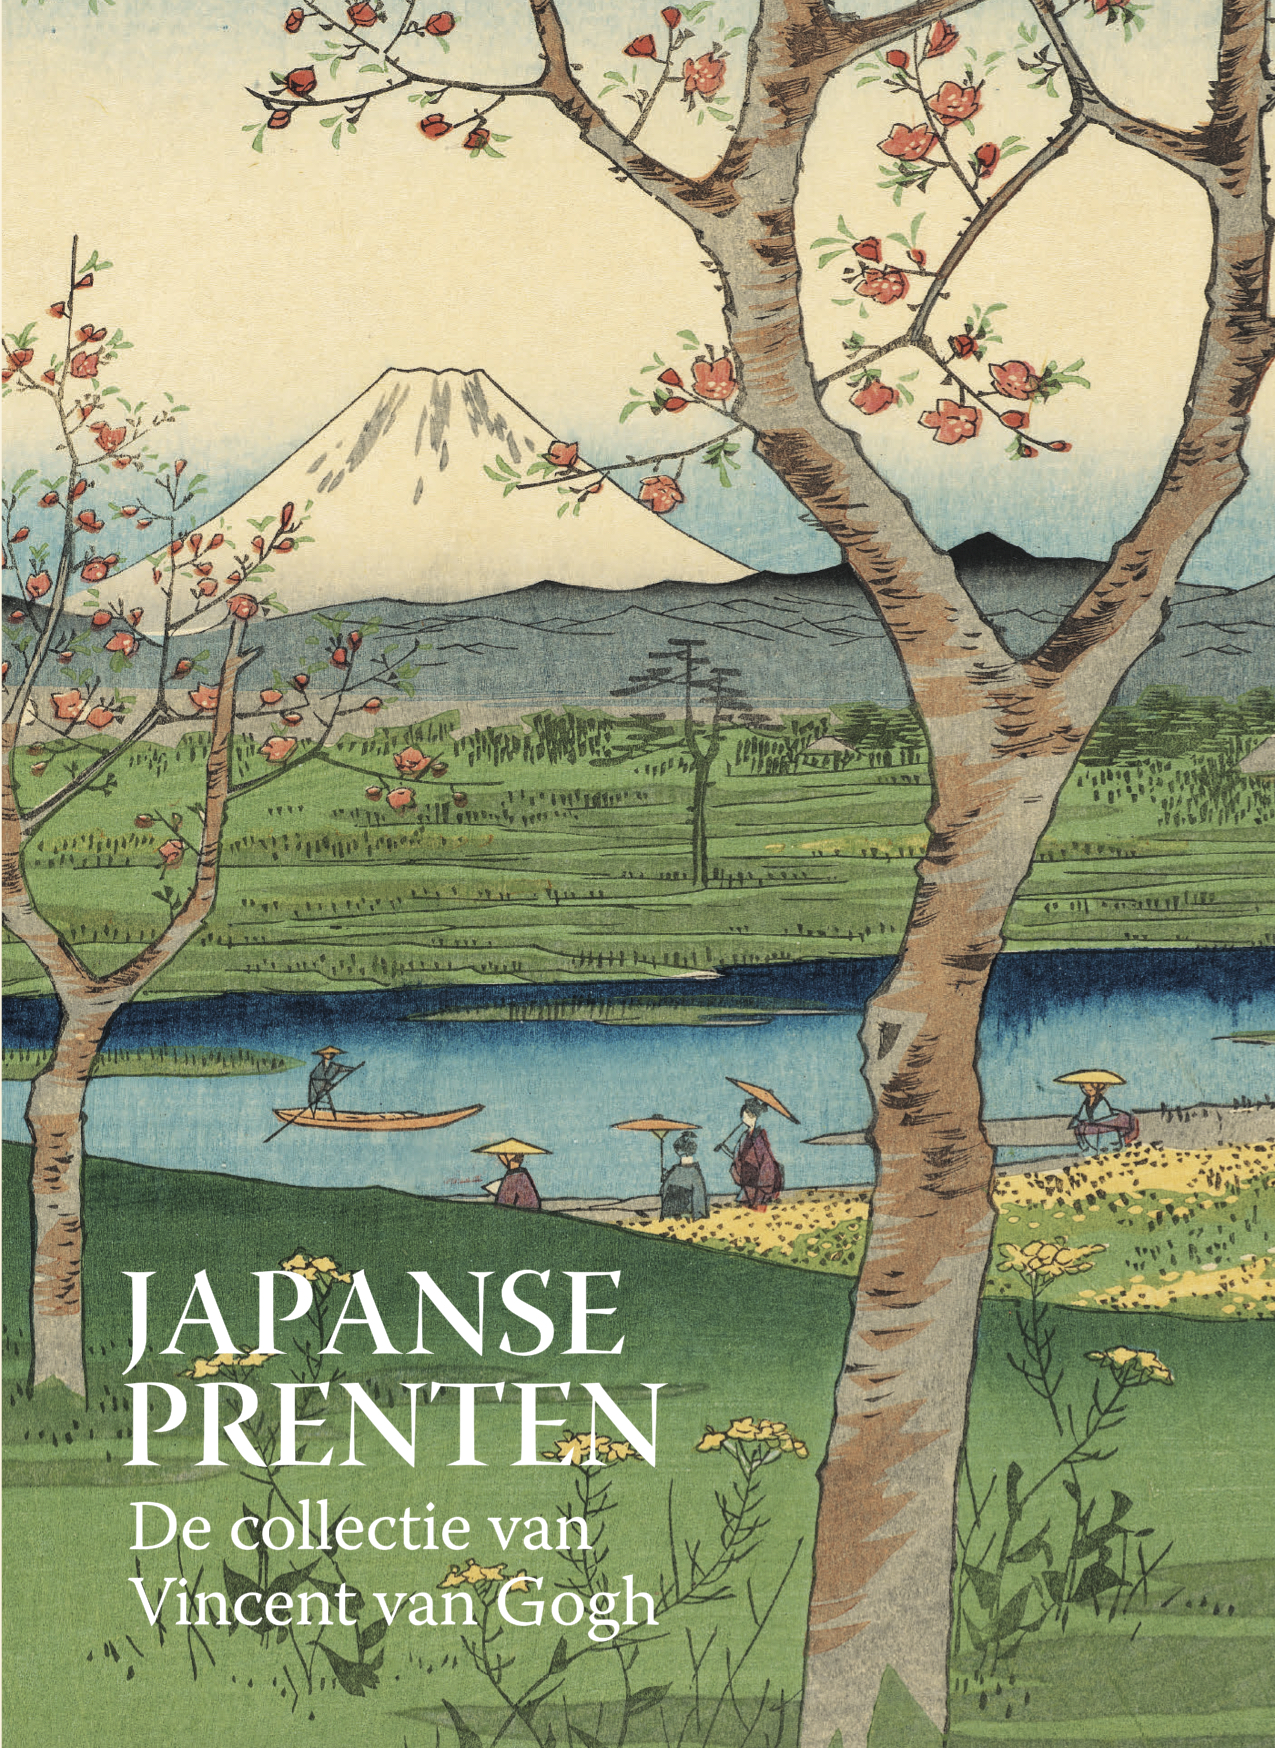 Japanse prenten cover NL